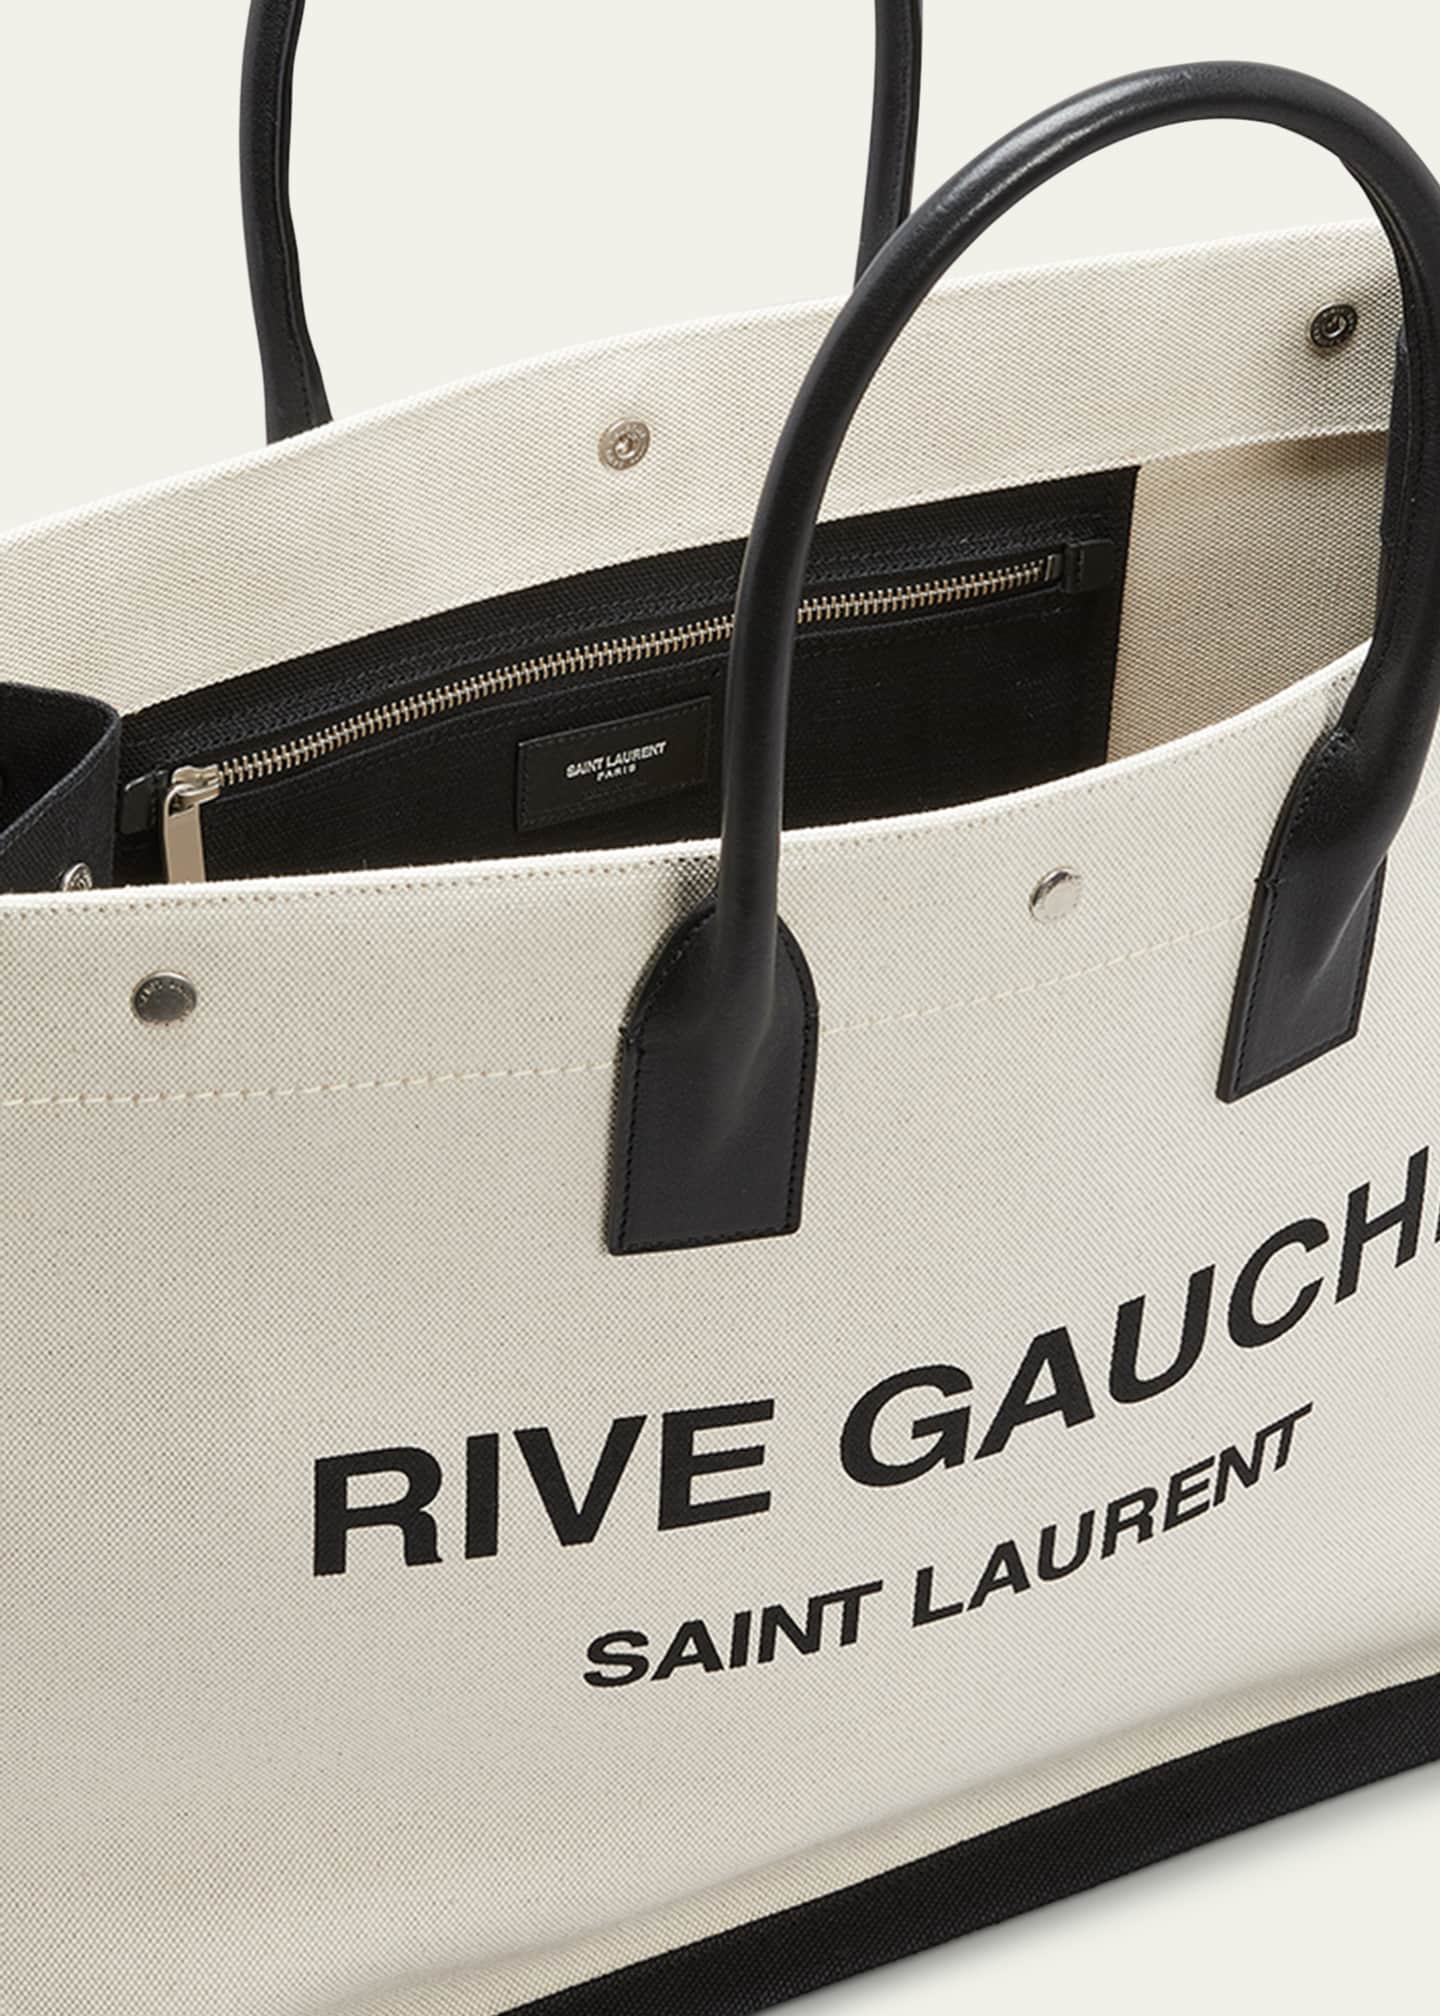 Saint Laurent Men's Rive Gauche Linen and Leather Tote Bag - ShopStyle